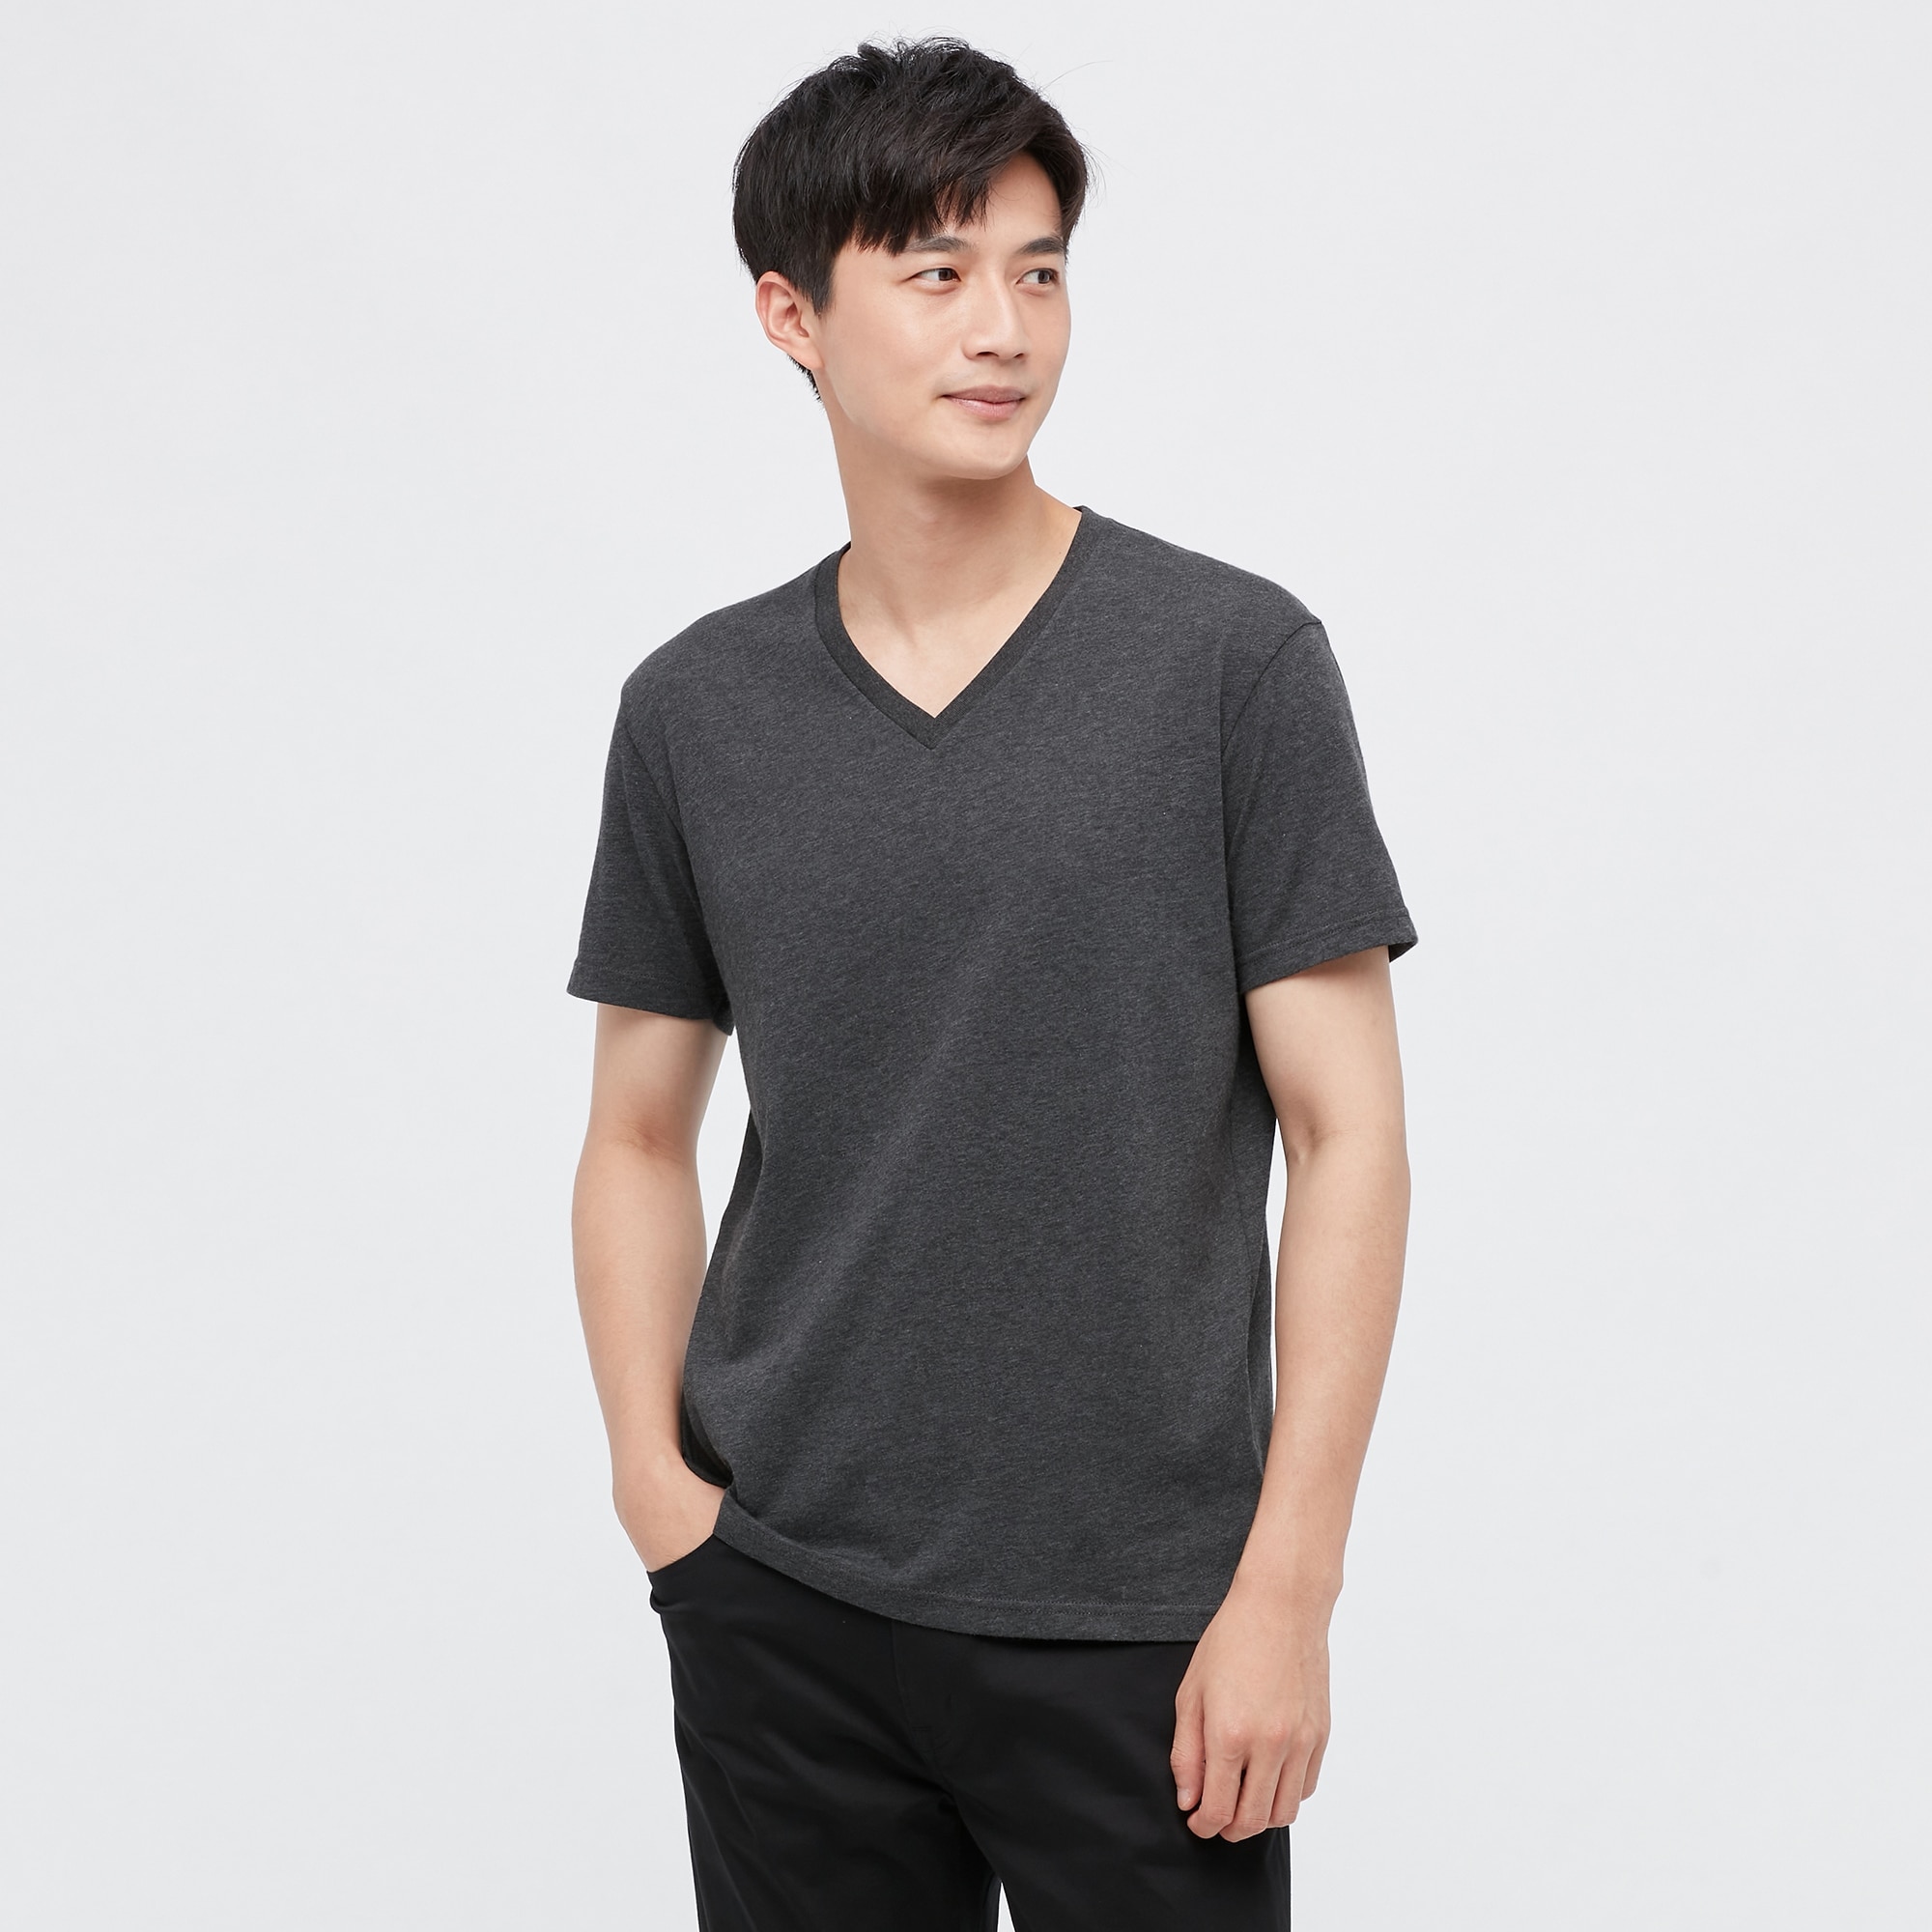 Tシャツ グレーの関連商品 ユニクロ